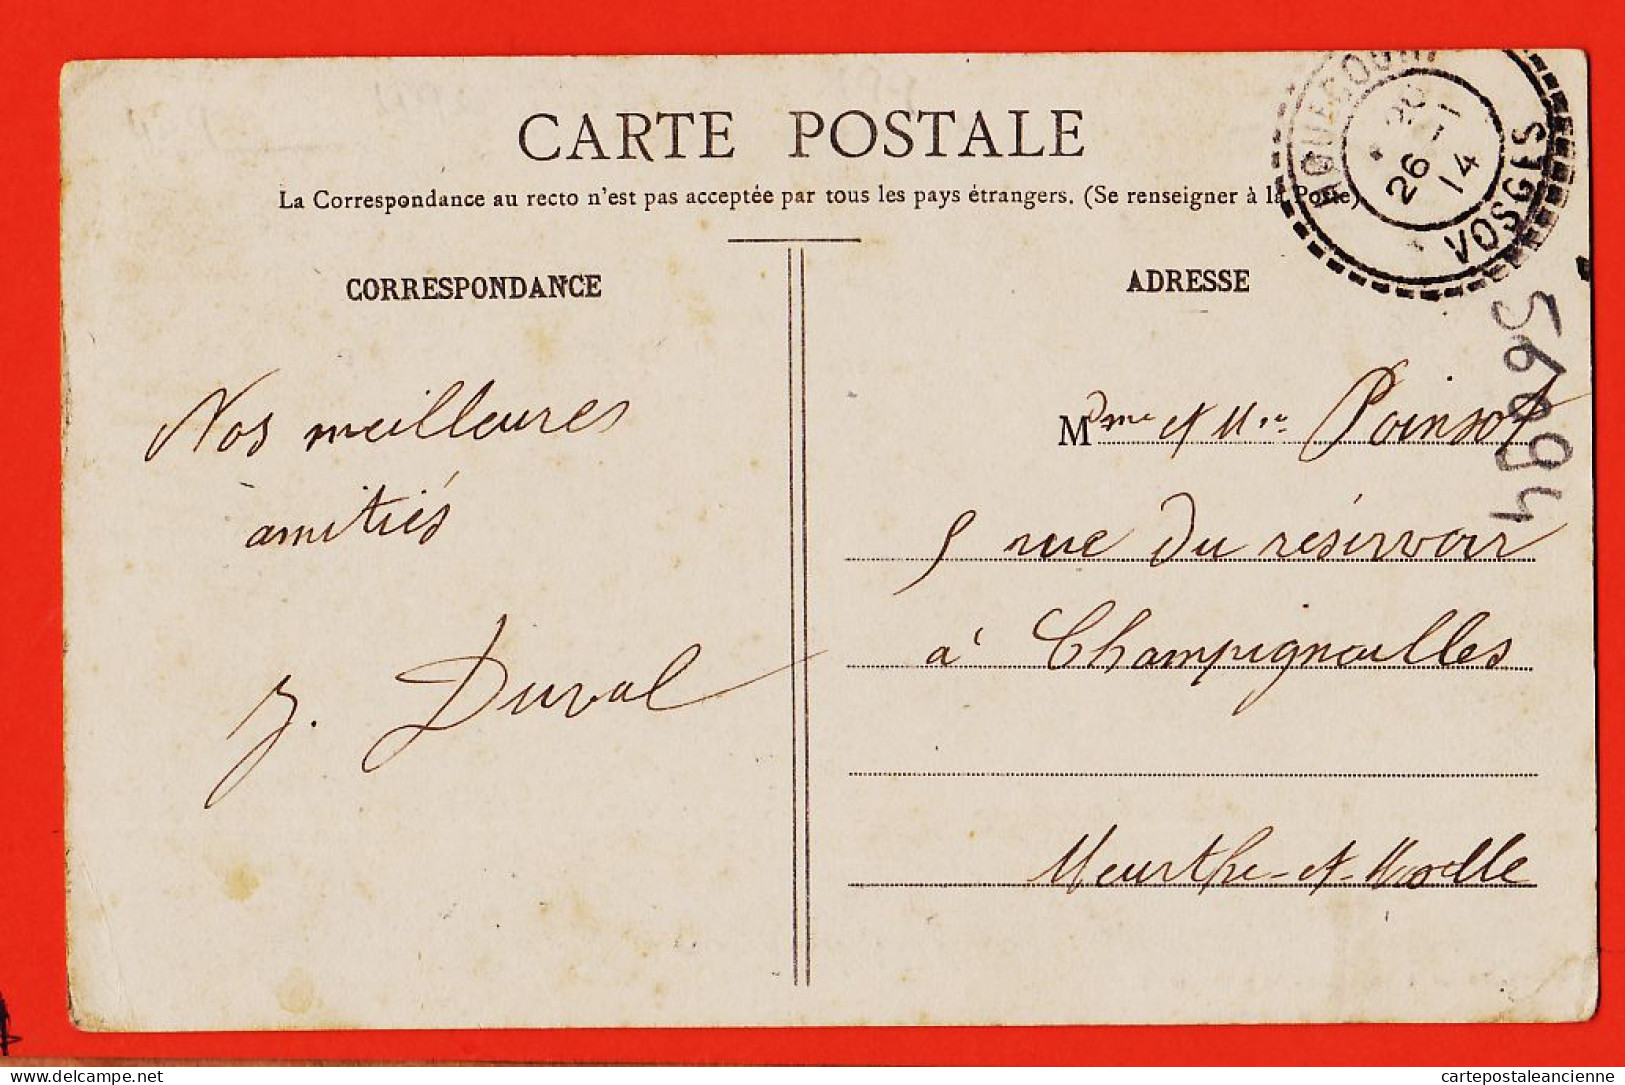 05787 / MIRECOURT 88-Vosges Avenue ECOLE-NORMALE Tampon Perlé HOUECOURT 1914 De DUVAL à POINSOT Champignolles - Mirecourt